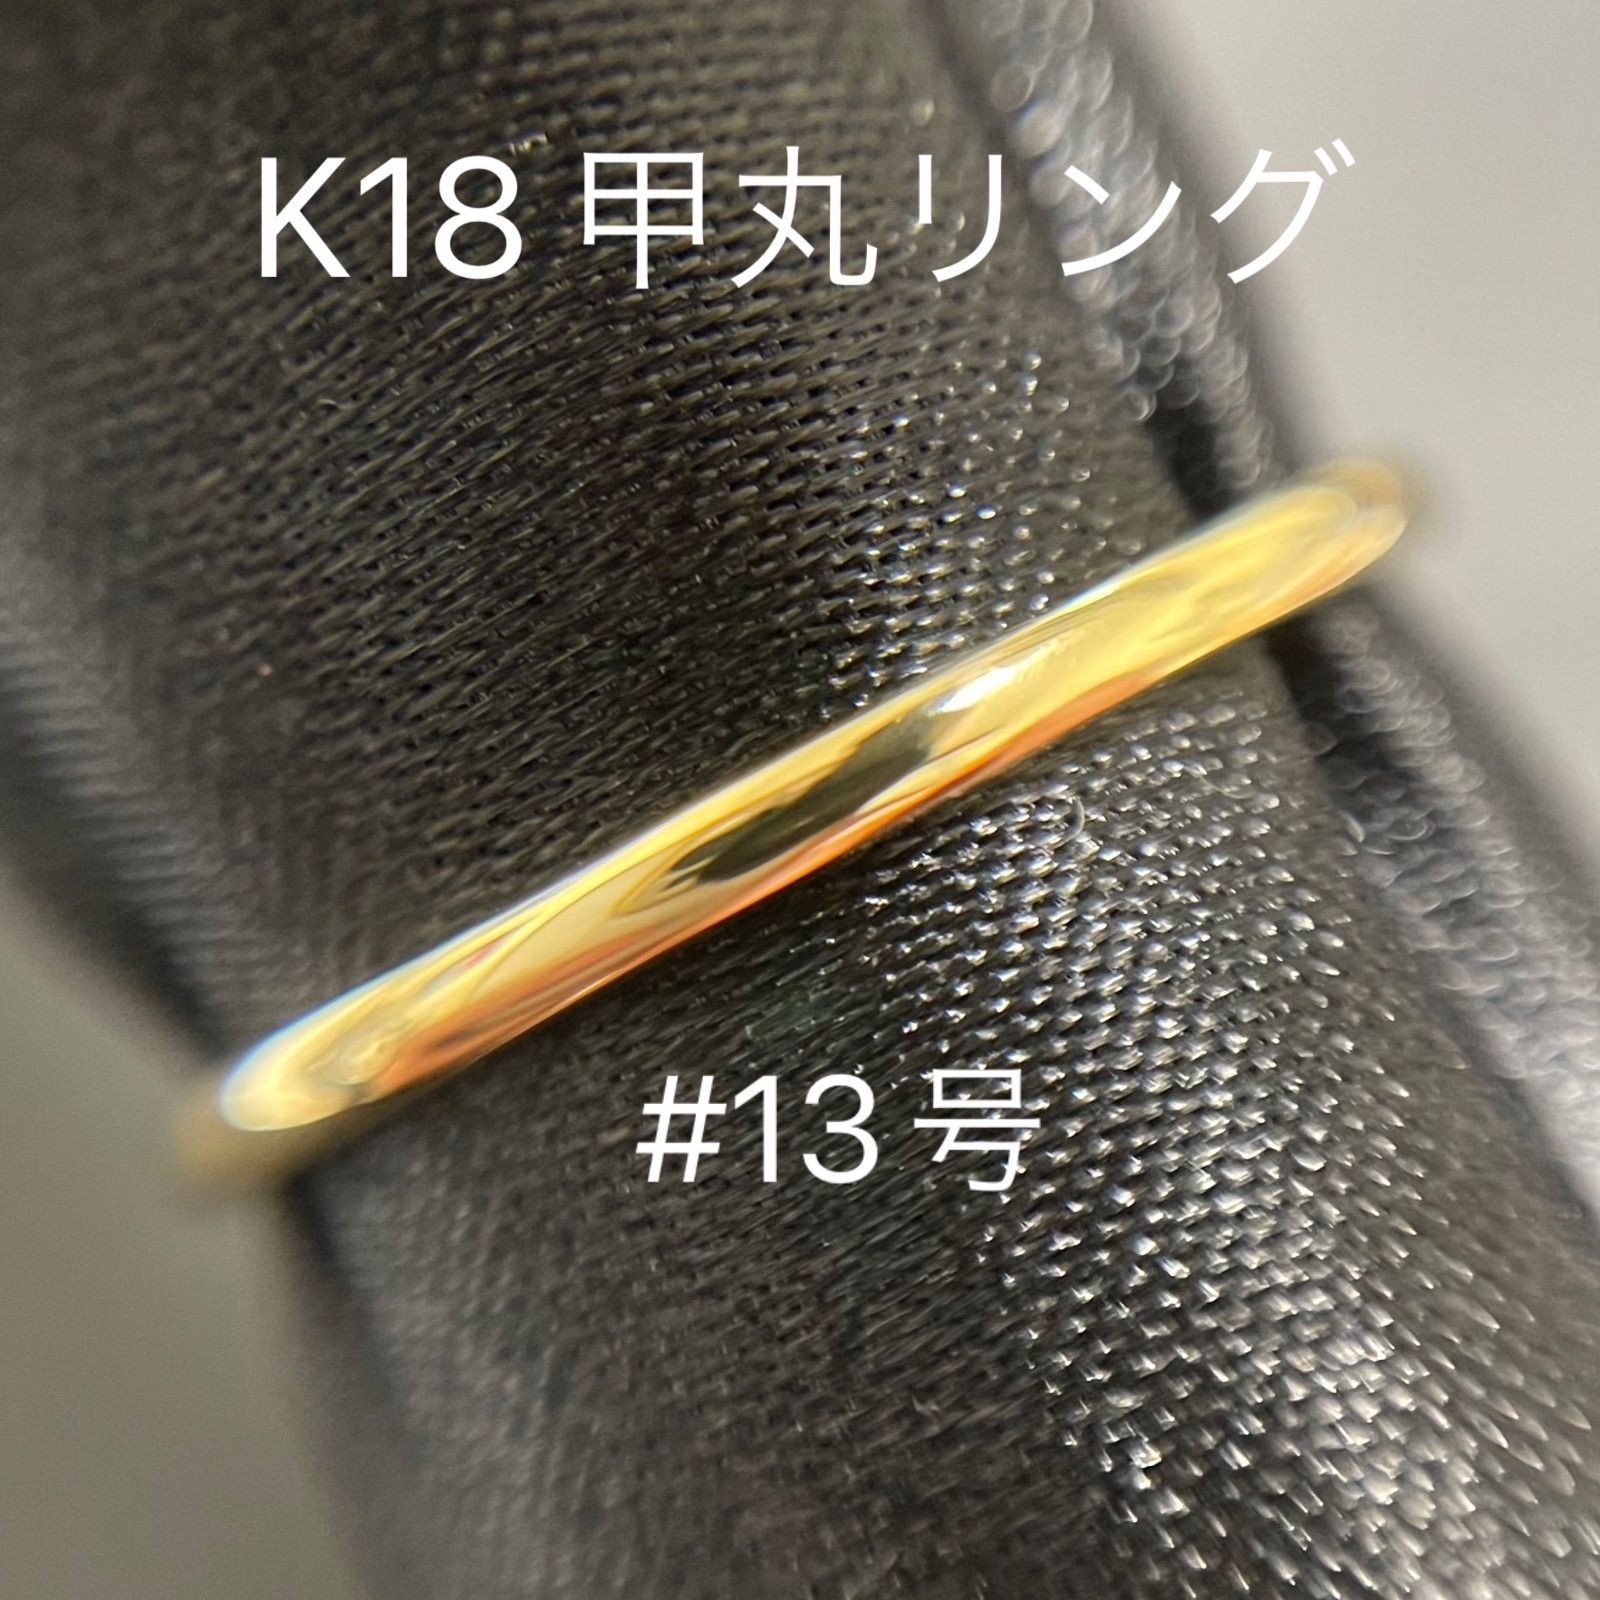 10,535円K18 甲丸 リング #13号 シンプルリング 18金